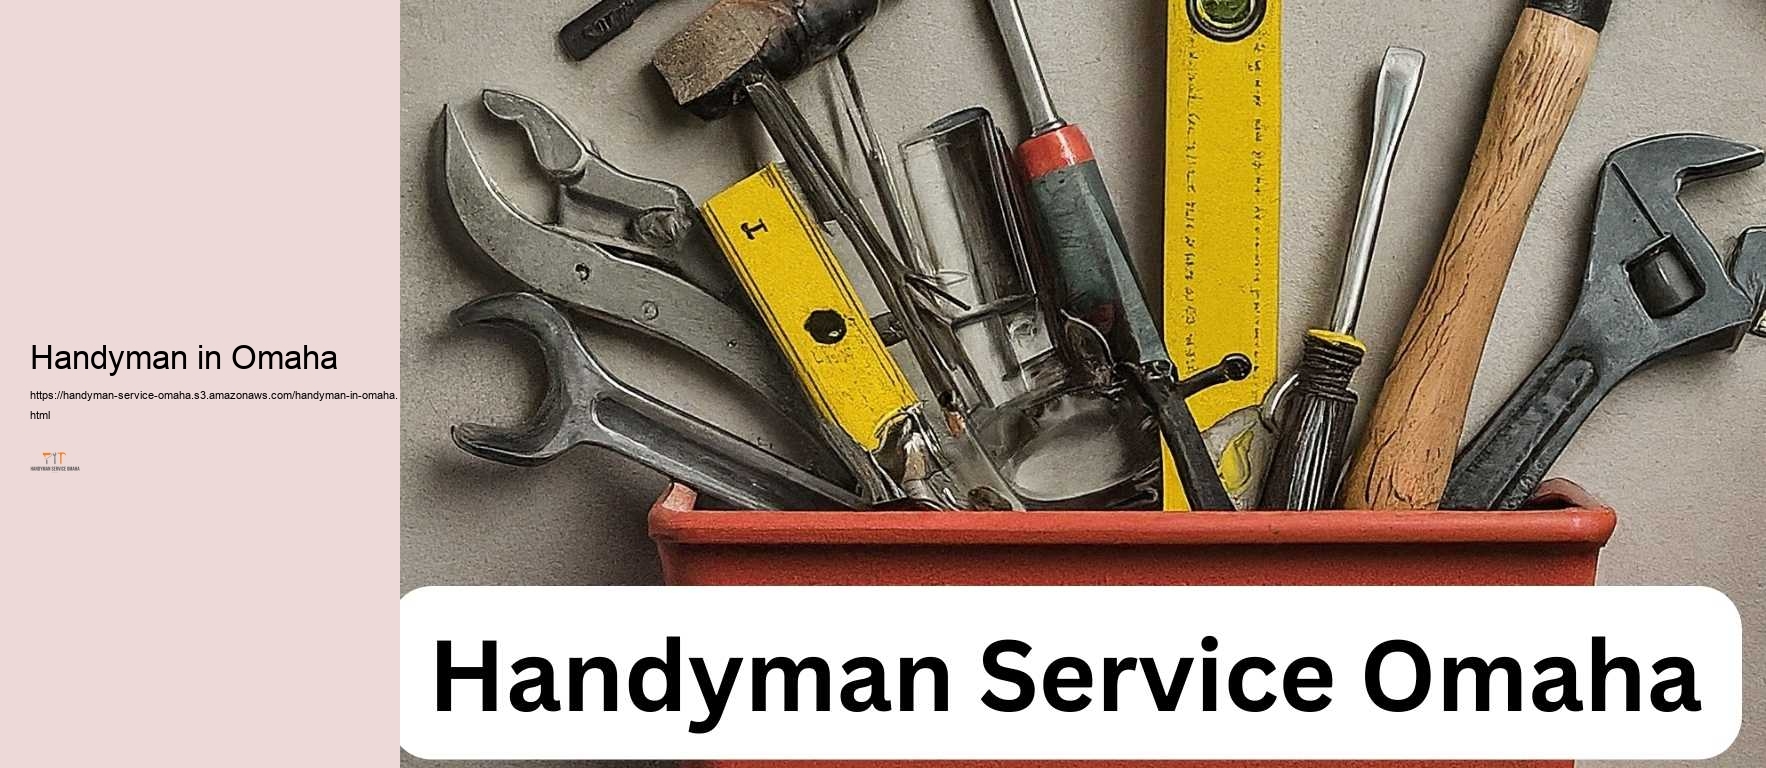 Handyman in Omaha